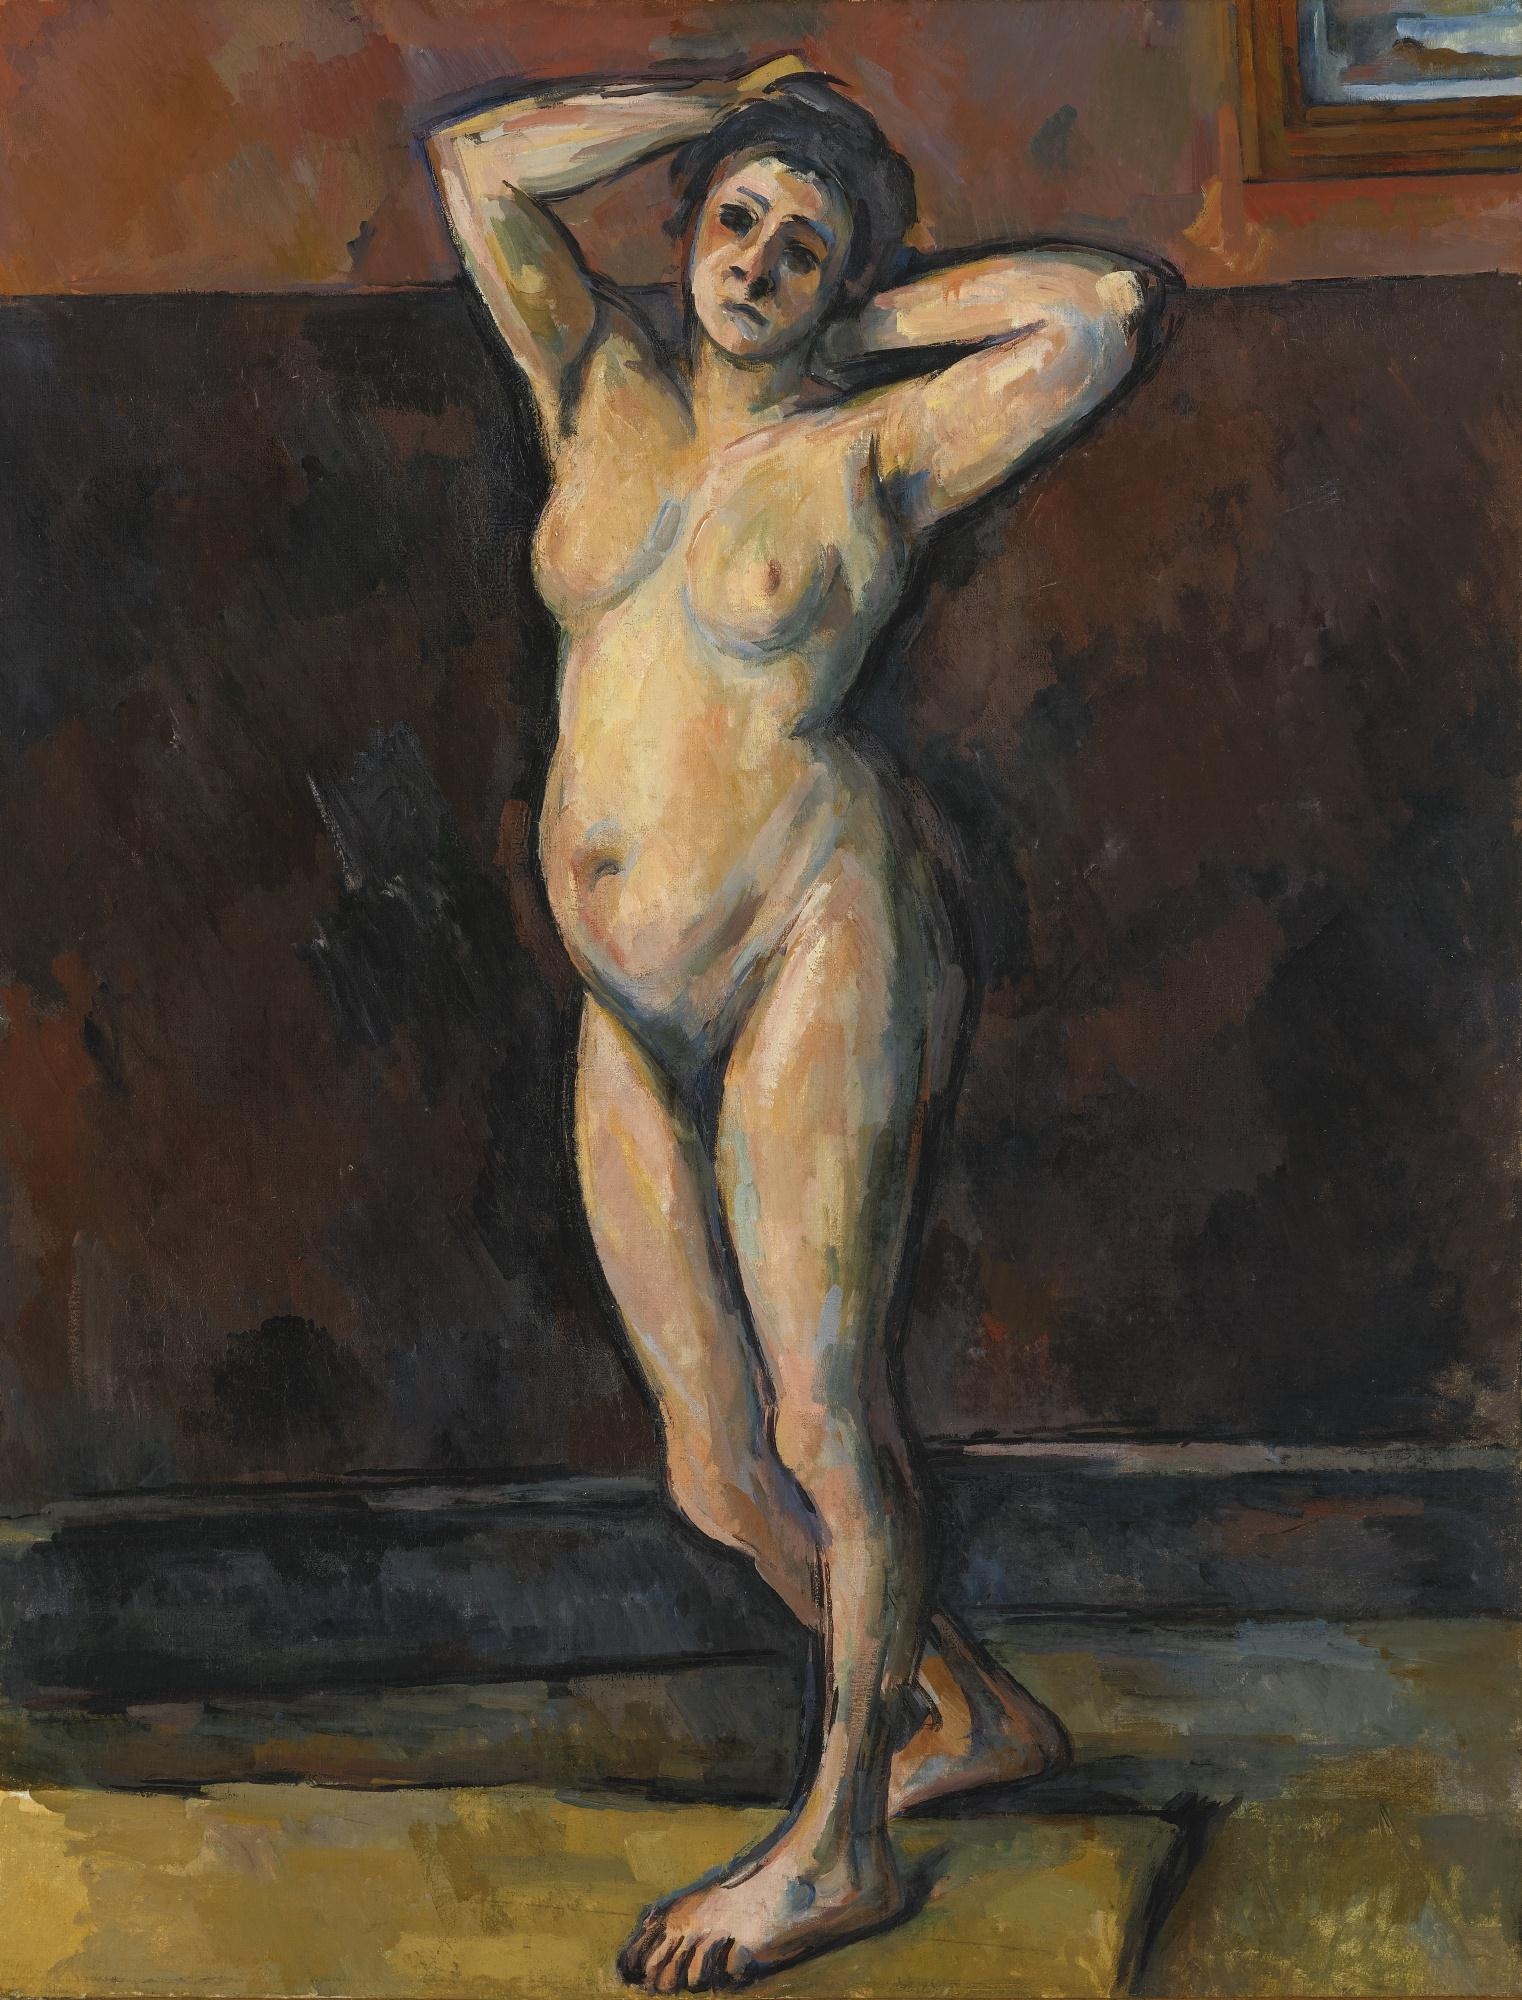 FEMME NUE DEBOUT by Paul Cézanne, circa 1898-1899